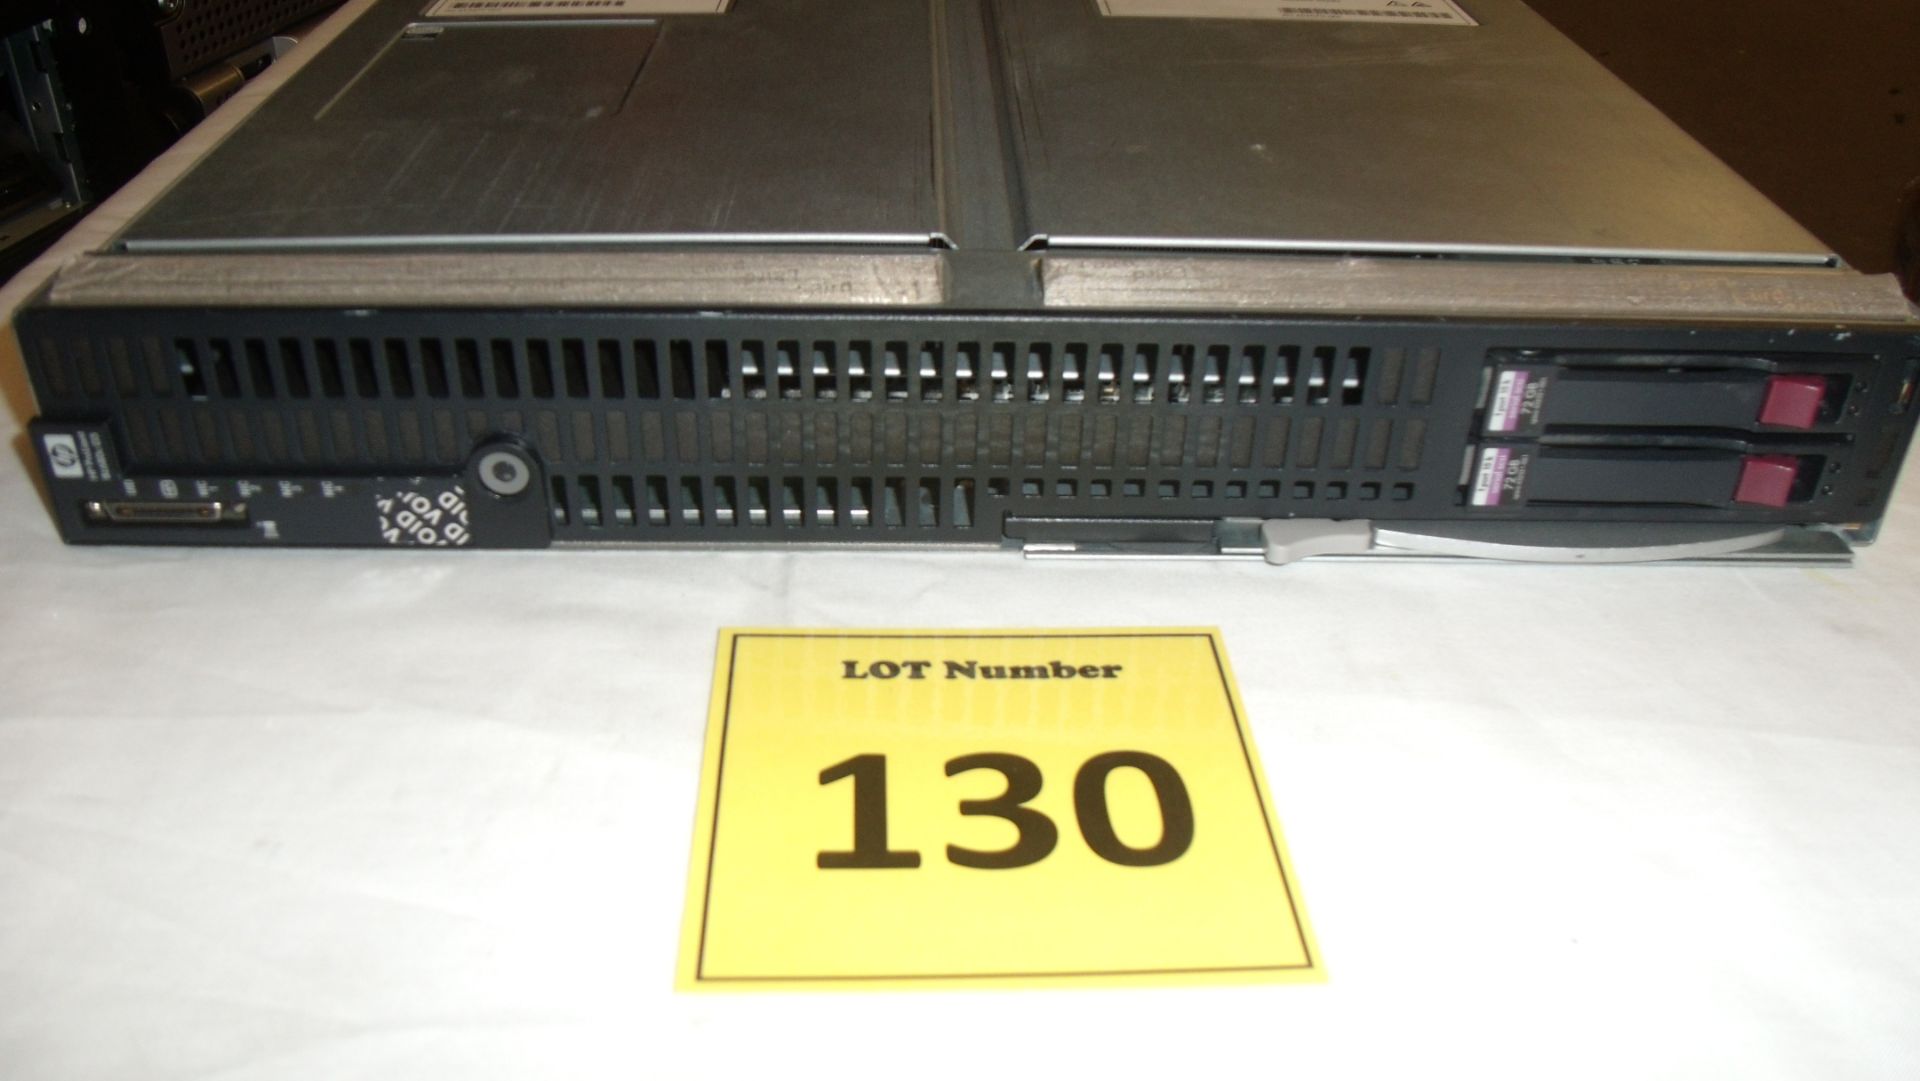 HP PROLIANT BL680C G5 BLADE SERVER. 4 X QUAD CORE 2.4GHZ PROCESSOR (E7340) 72GB RAM, 2 X 72GB SAS